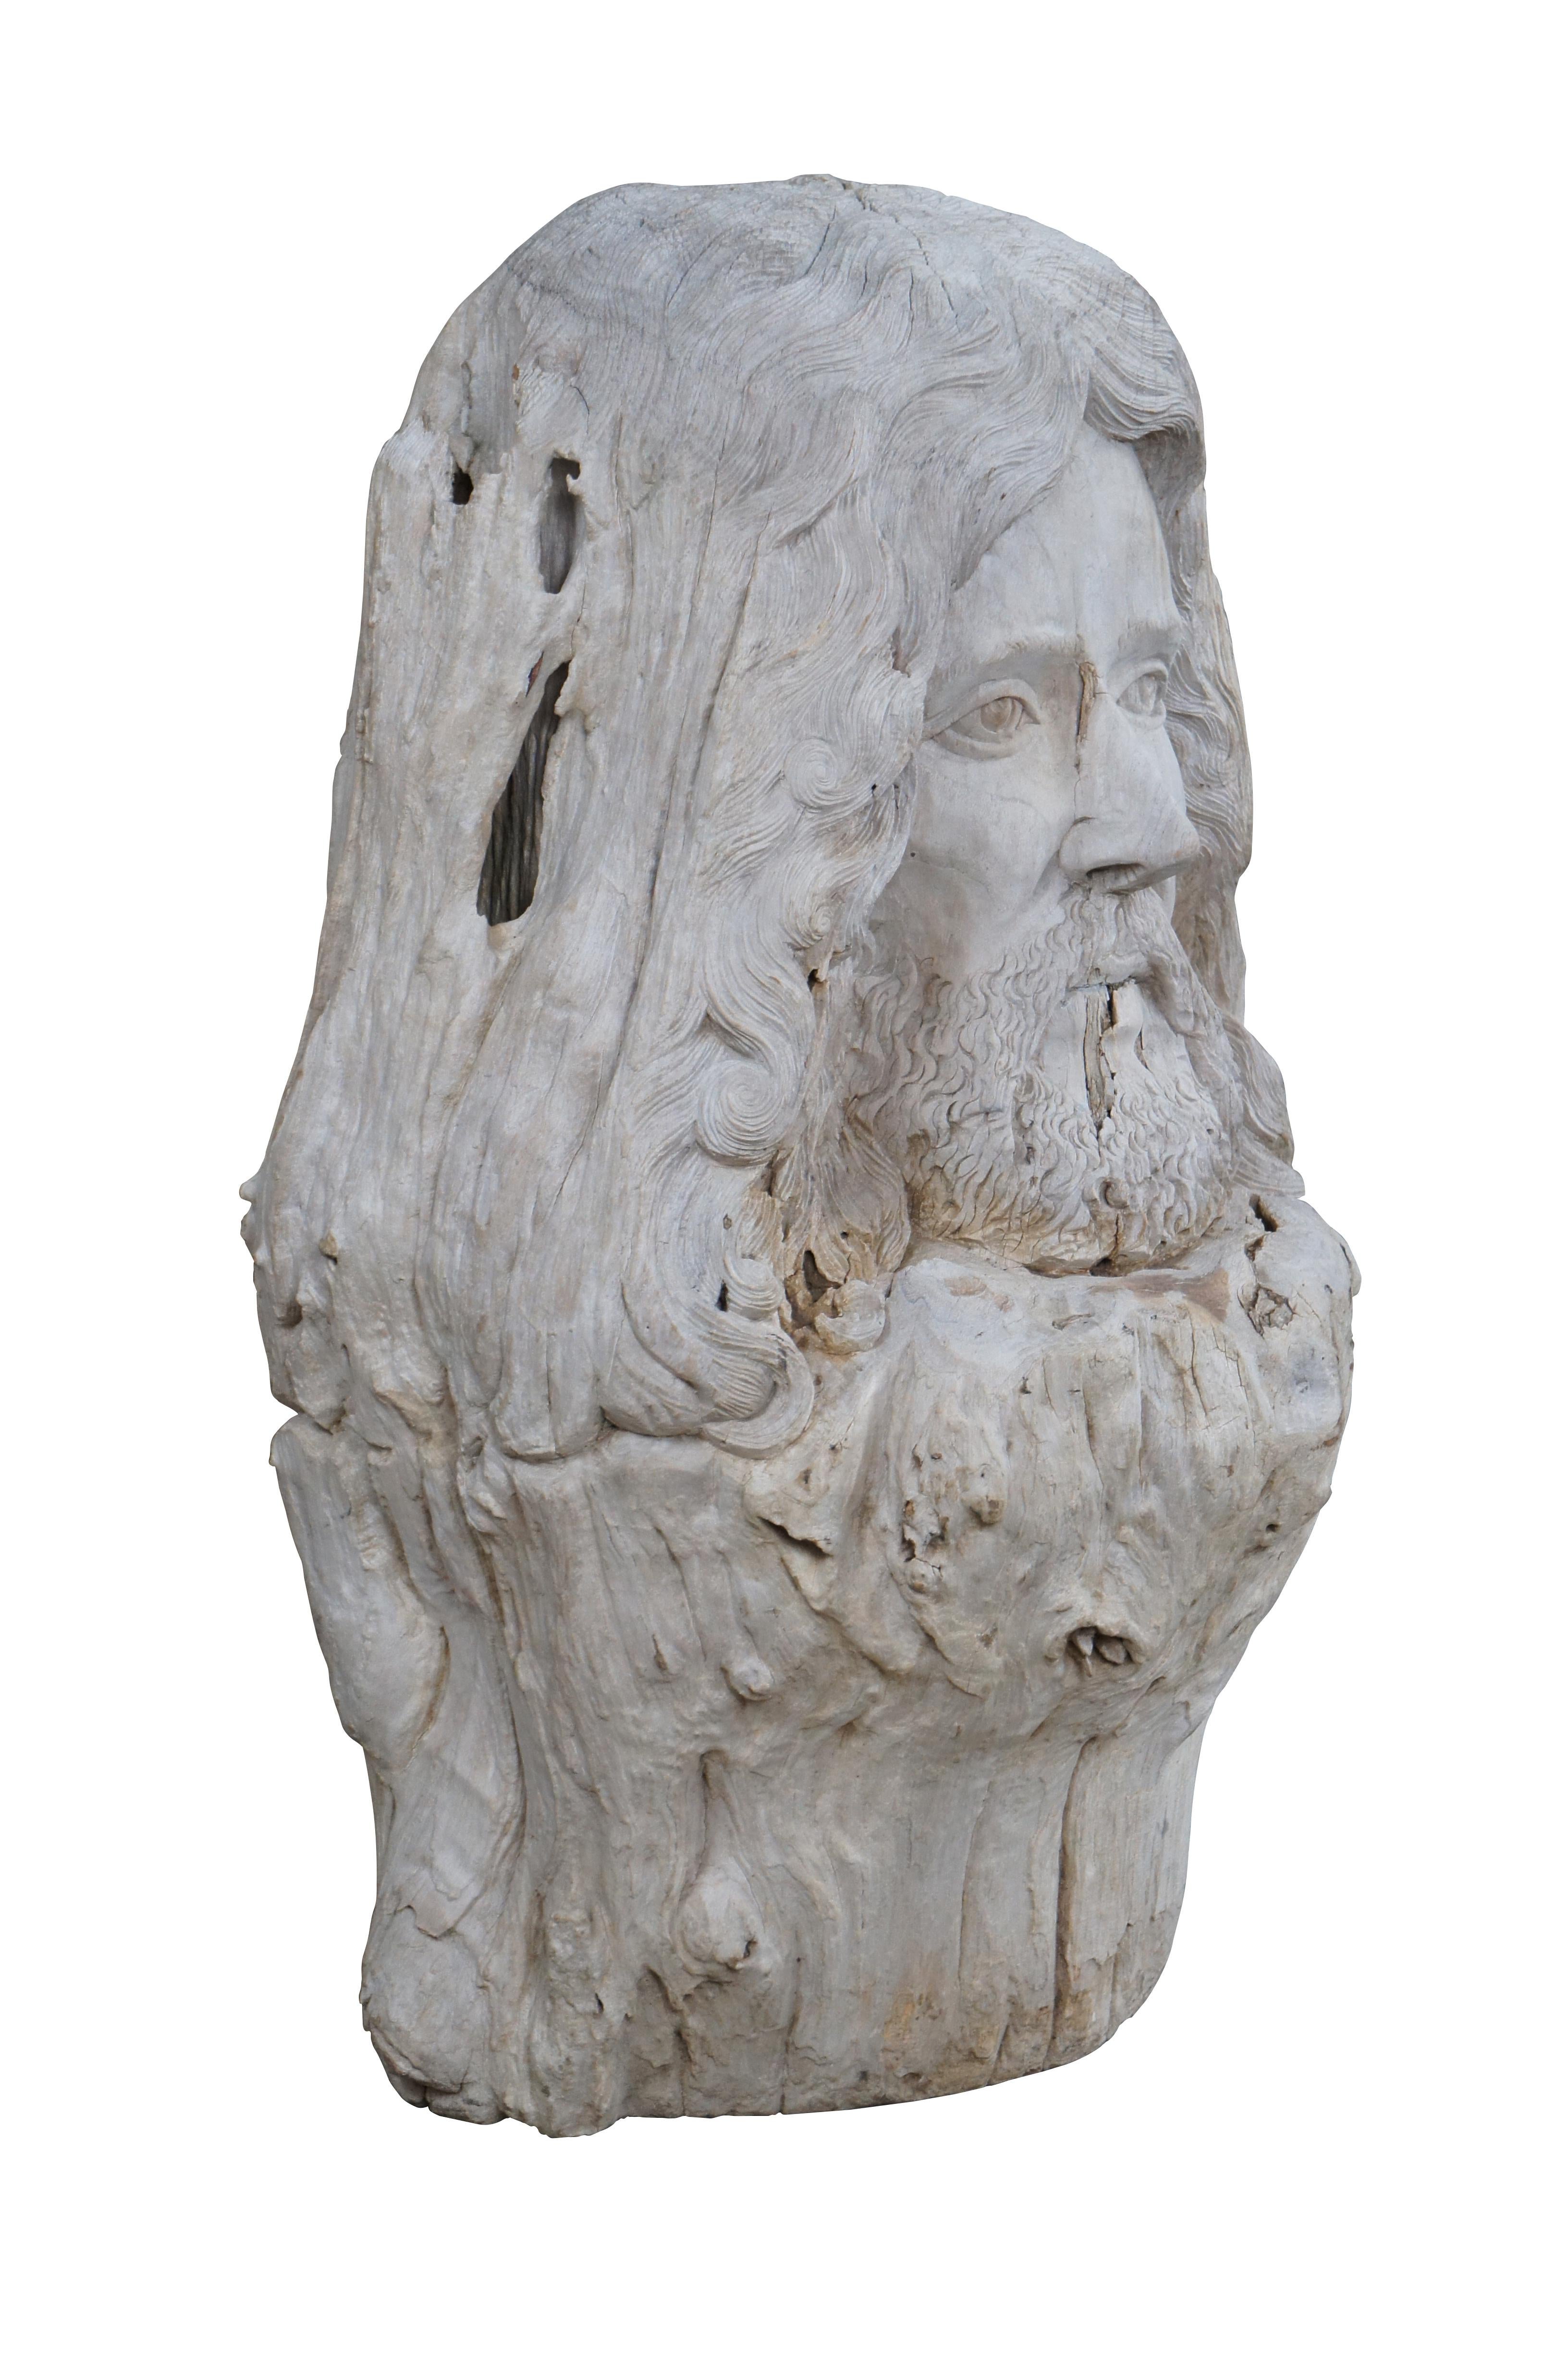 Une grande sculpture de Zues en bois flotté. Sculptée à la main avec des détails naturels à partir d'un morceau de bois flotté très lourd.

Dans la mythologie grecque antique, Zeus est le dieu du ciel, du tonnerre et de la foudre. Il est également